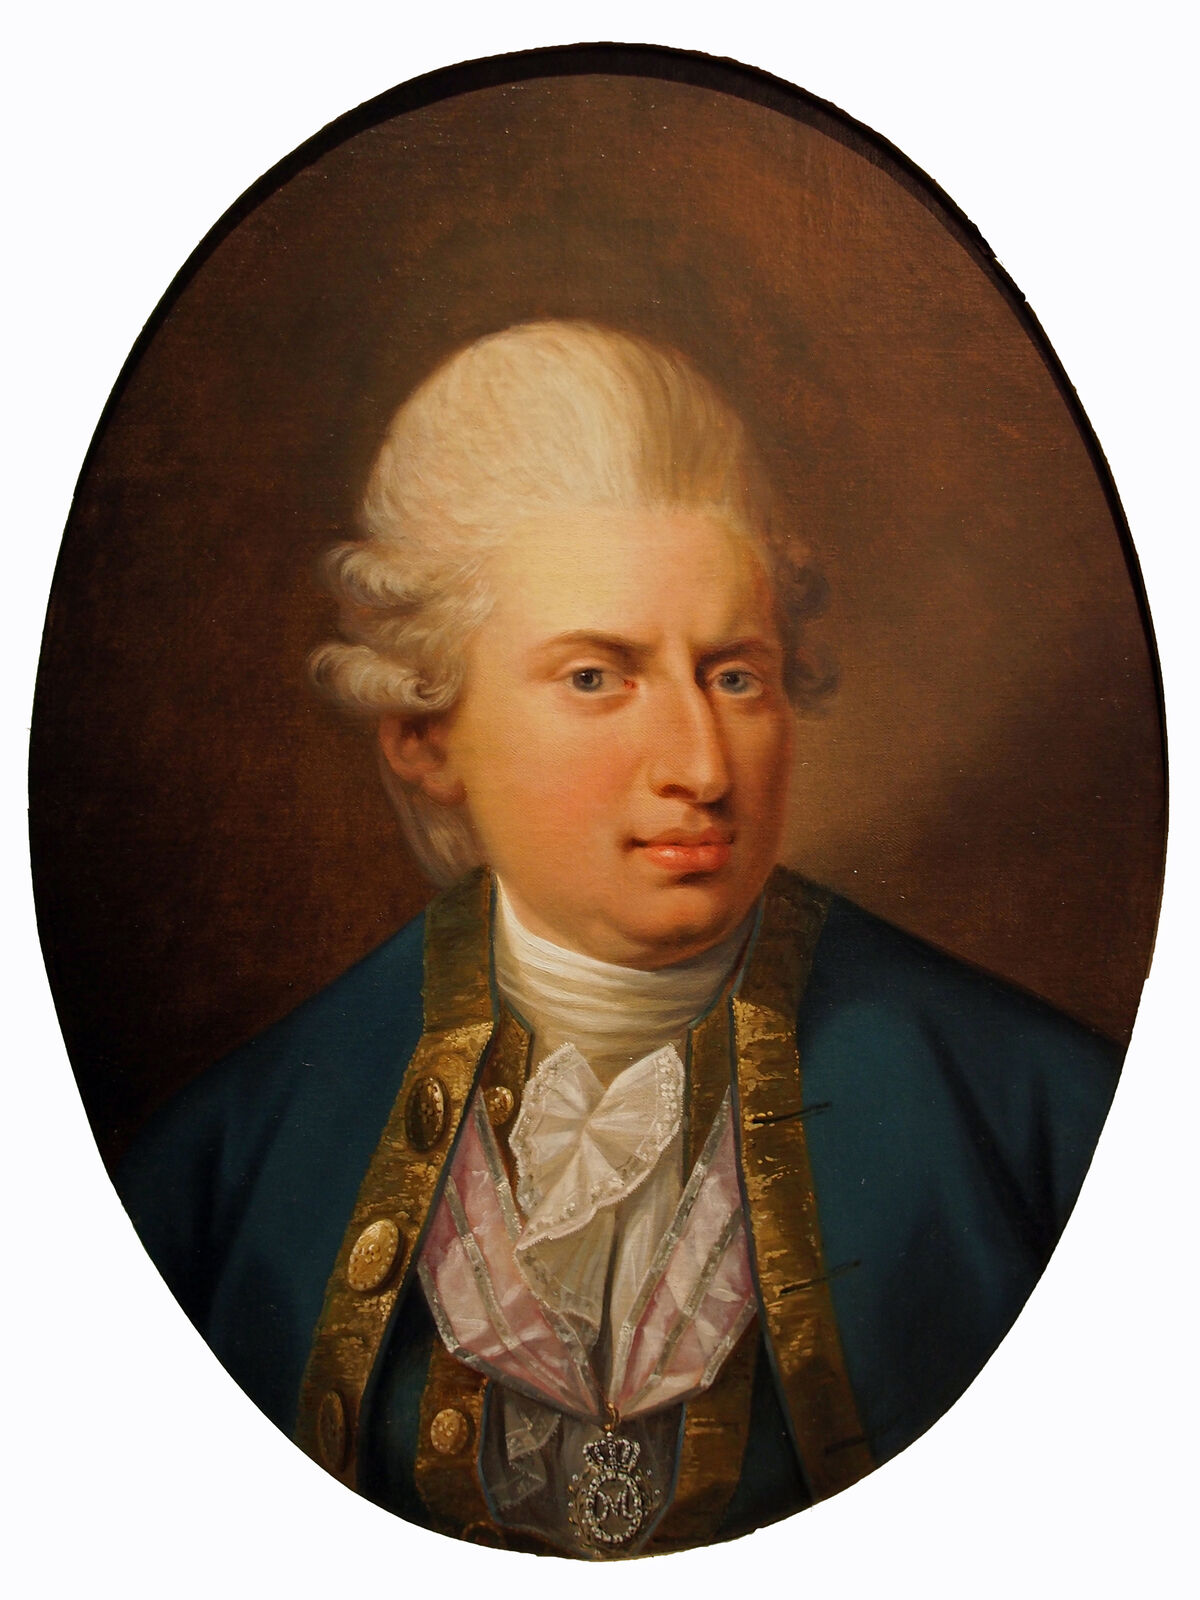 GFD 1/8: Johann Friedrich Struensee (Portrait von Jens Juel, 1771)